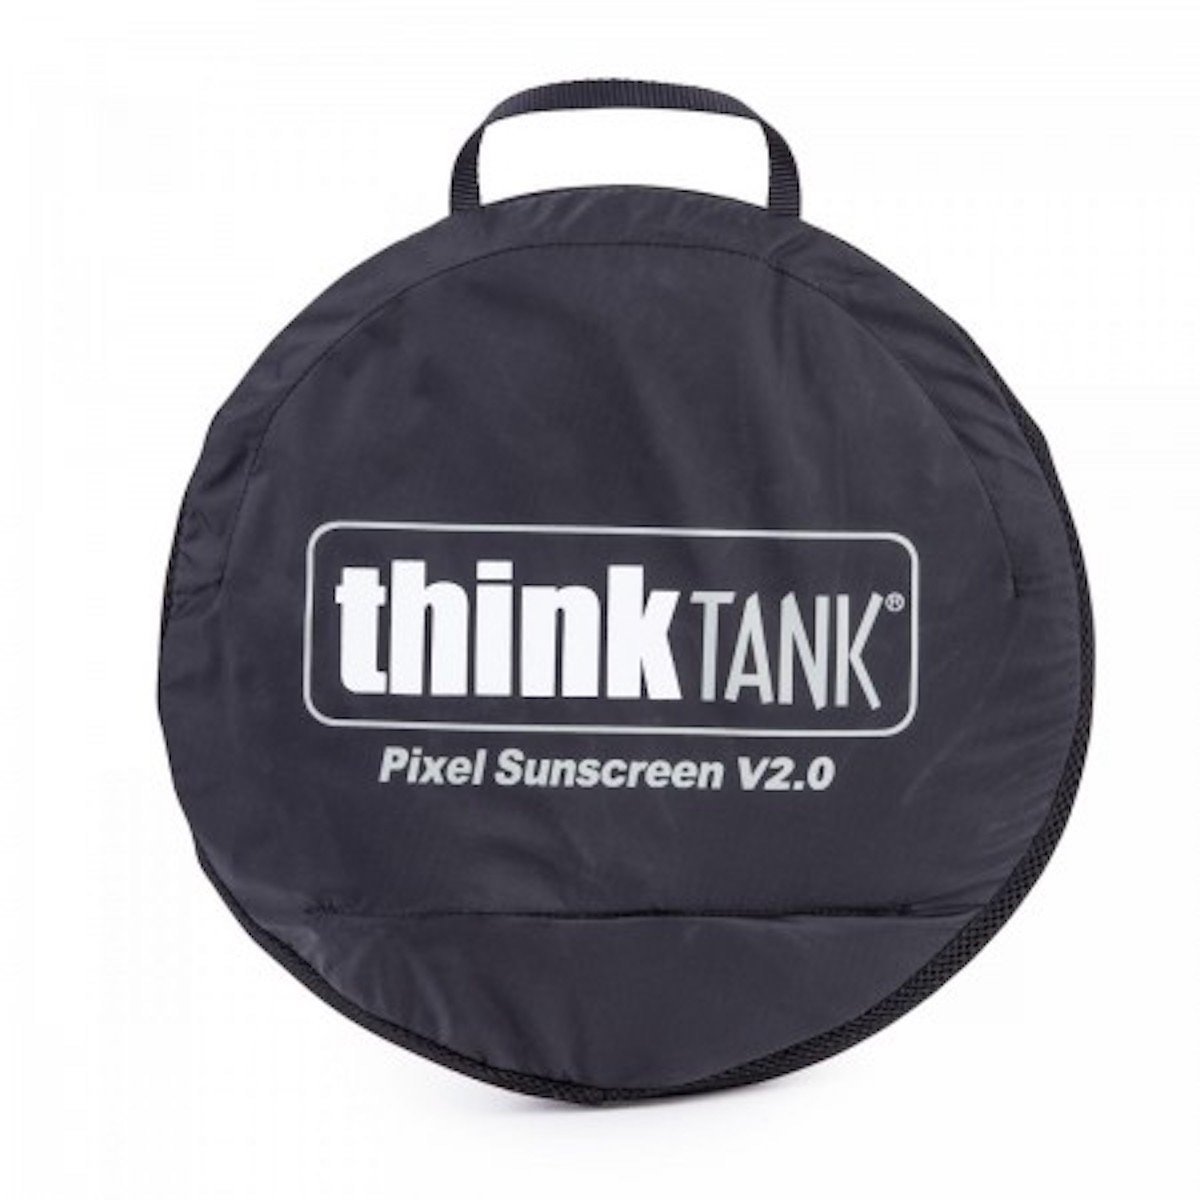 ThinkTank Pixel Sunscreen V2.0 Pop-up Sonnenschutz 